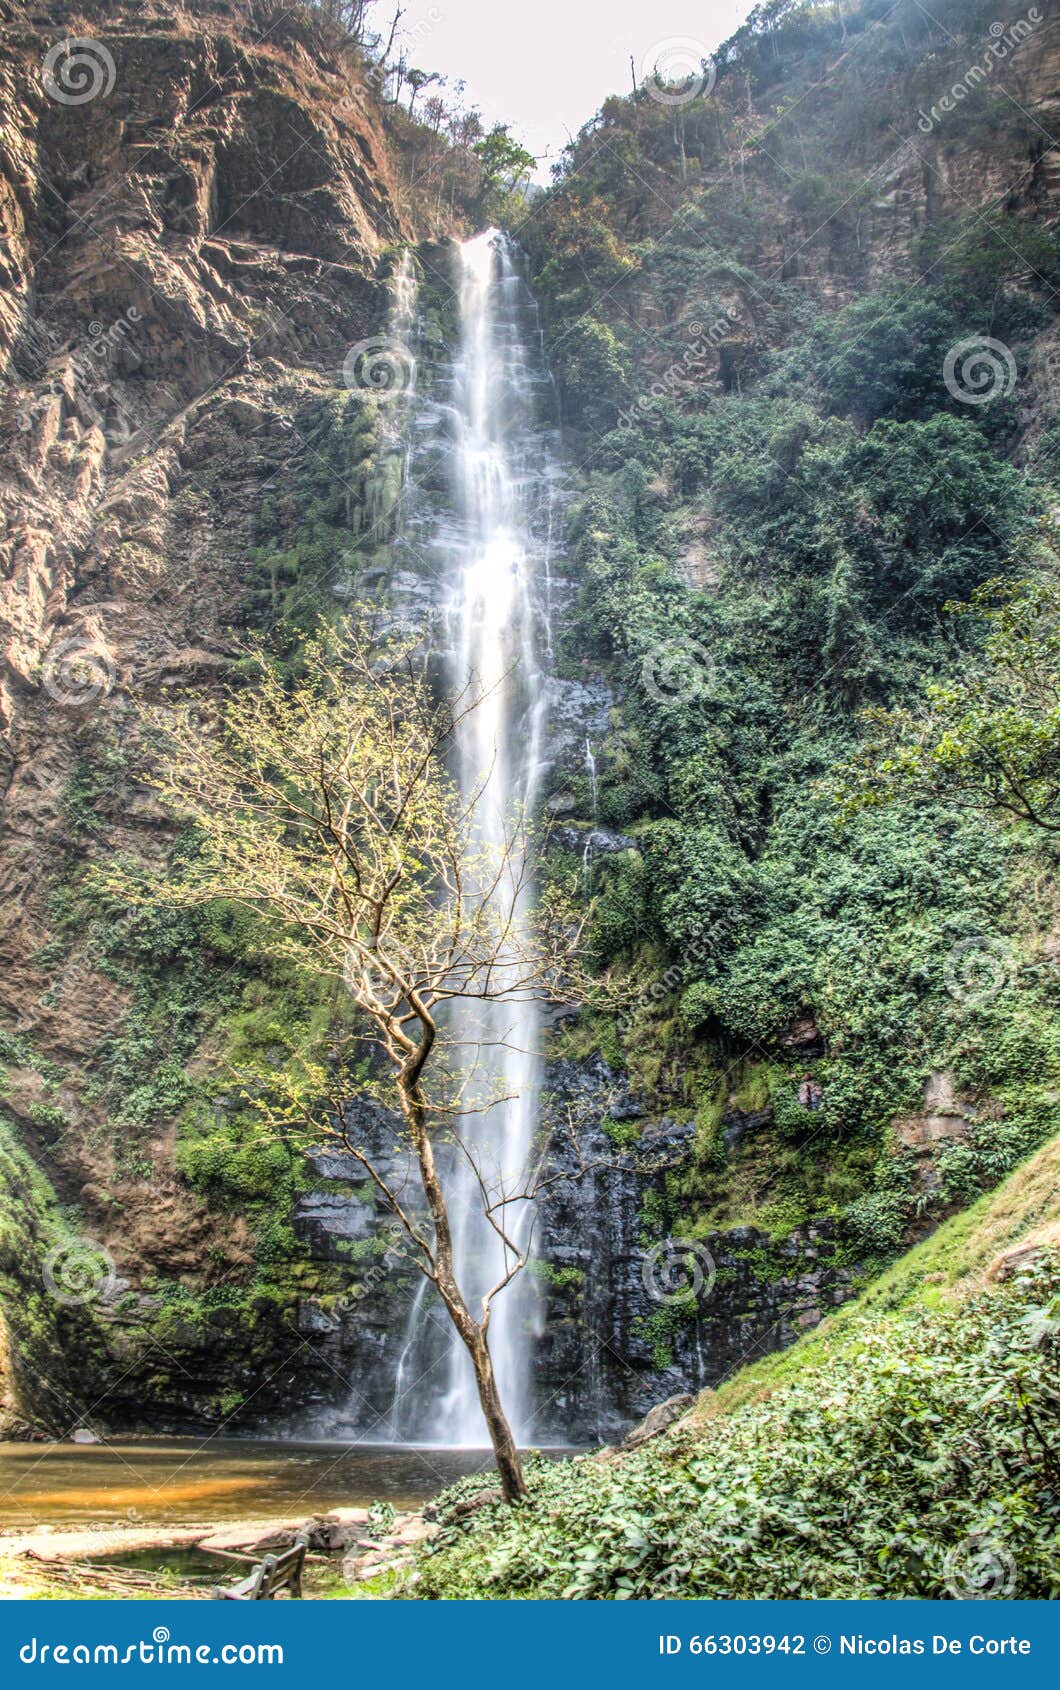 wli waterfall in the volta region in ghana